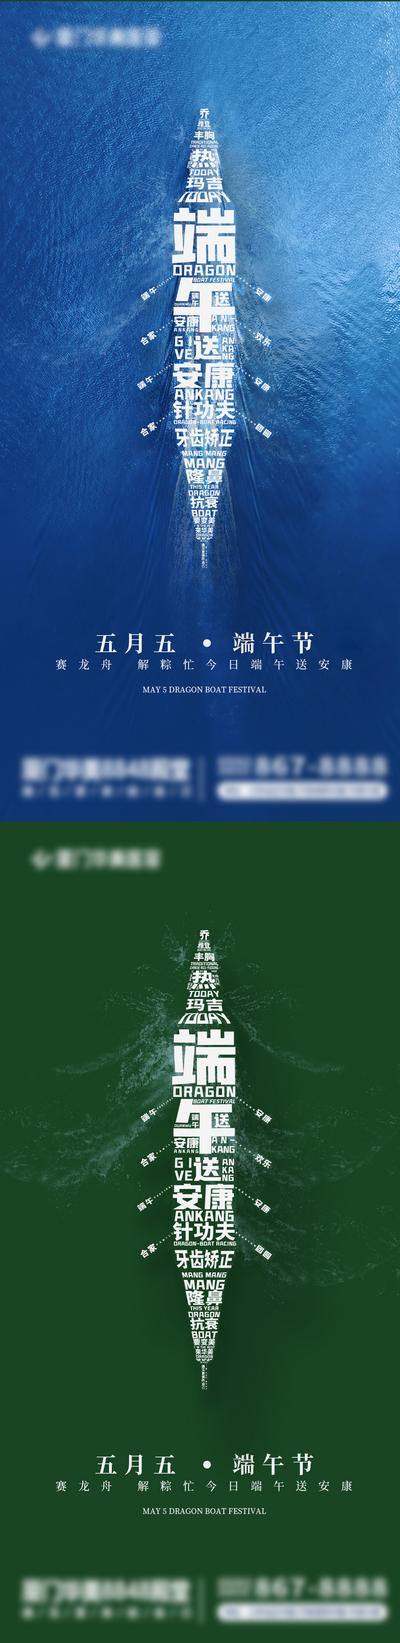 南门网 广告 海报 医美 端午 创意 系列 中国传统节日 端午节 项目 龙舟 文字 系列